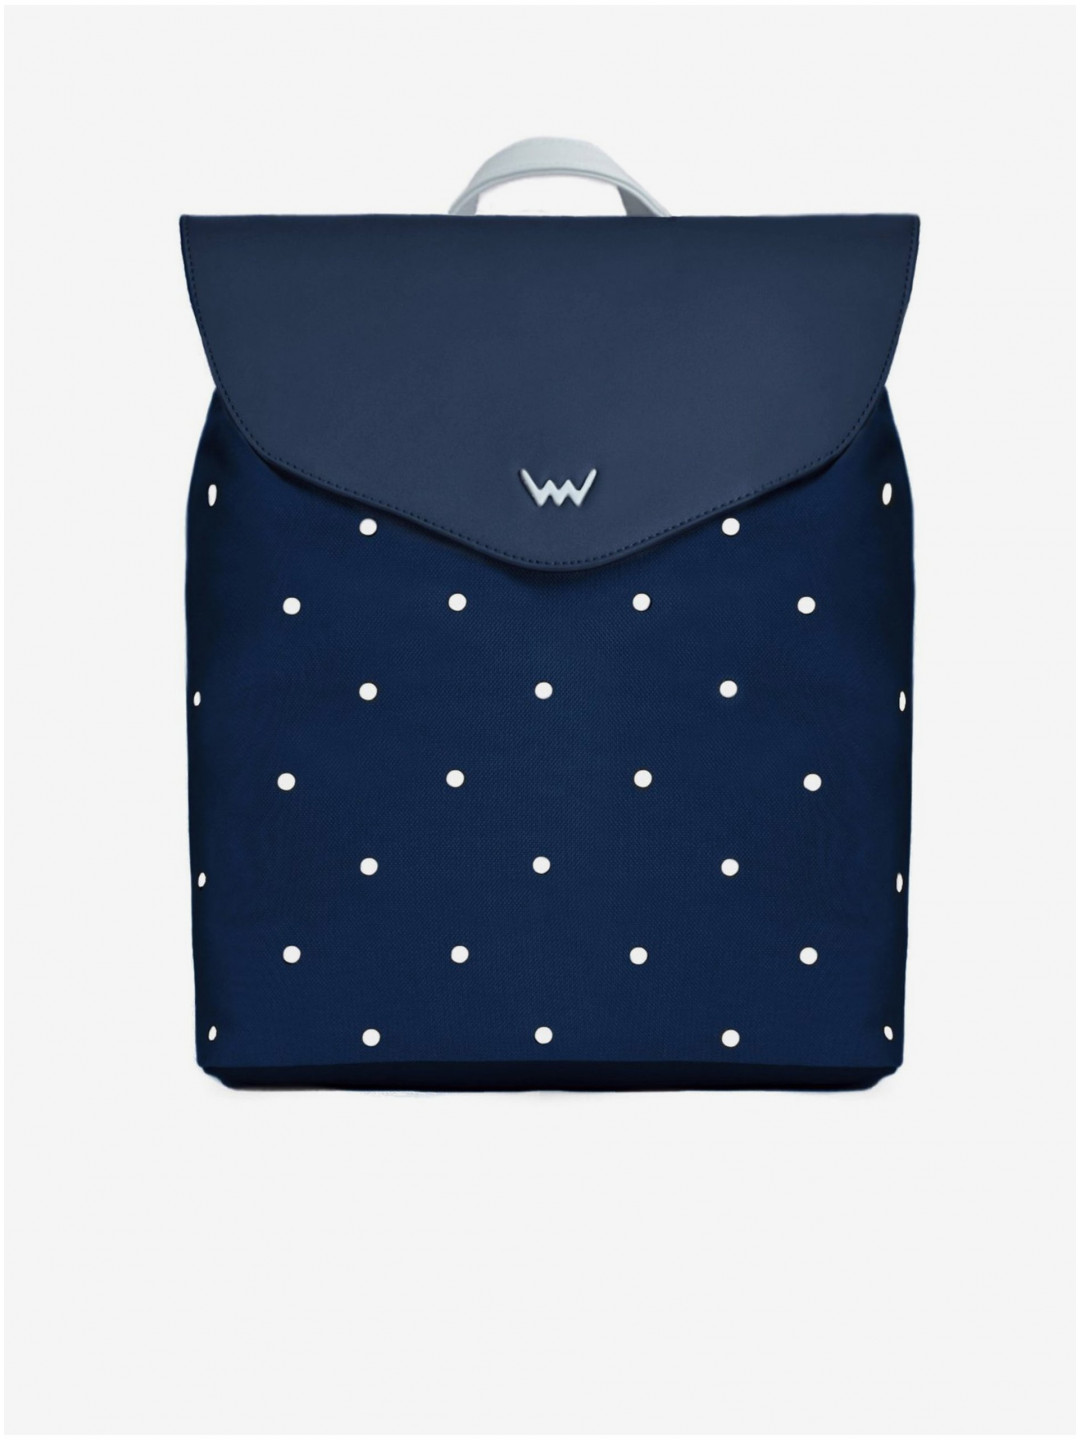 Tmavě modrý dámský puntíkovaný batoh VUCH Hasling